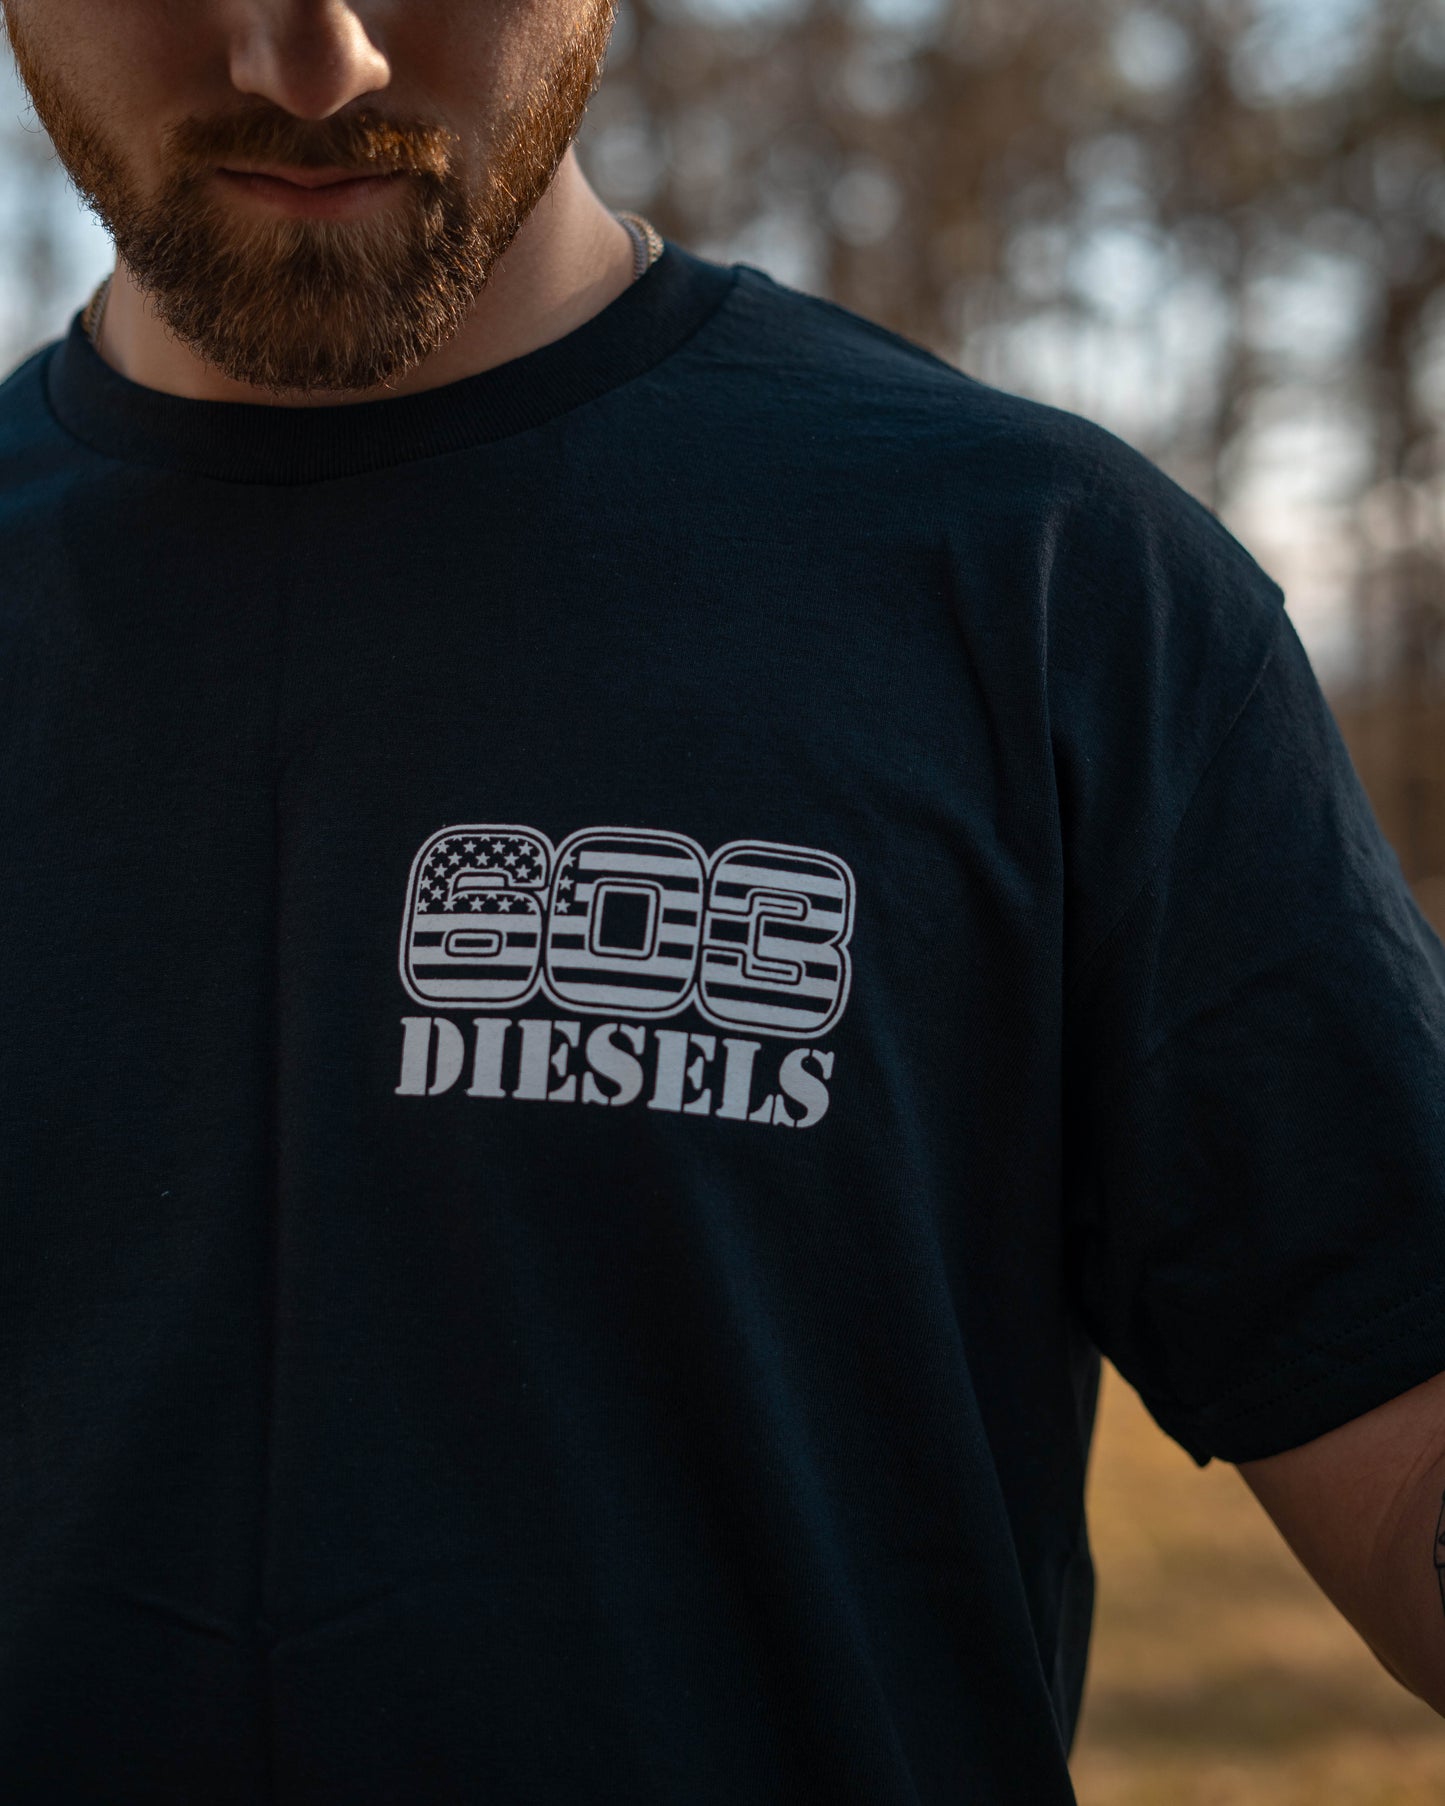 603 Diesels Roses Tshirt